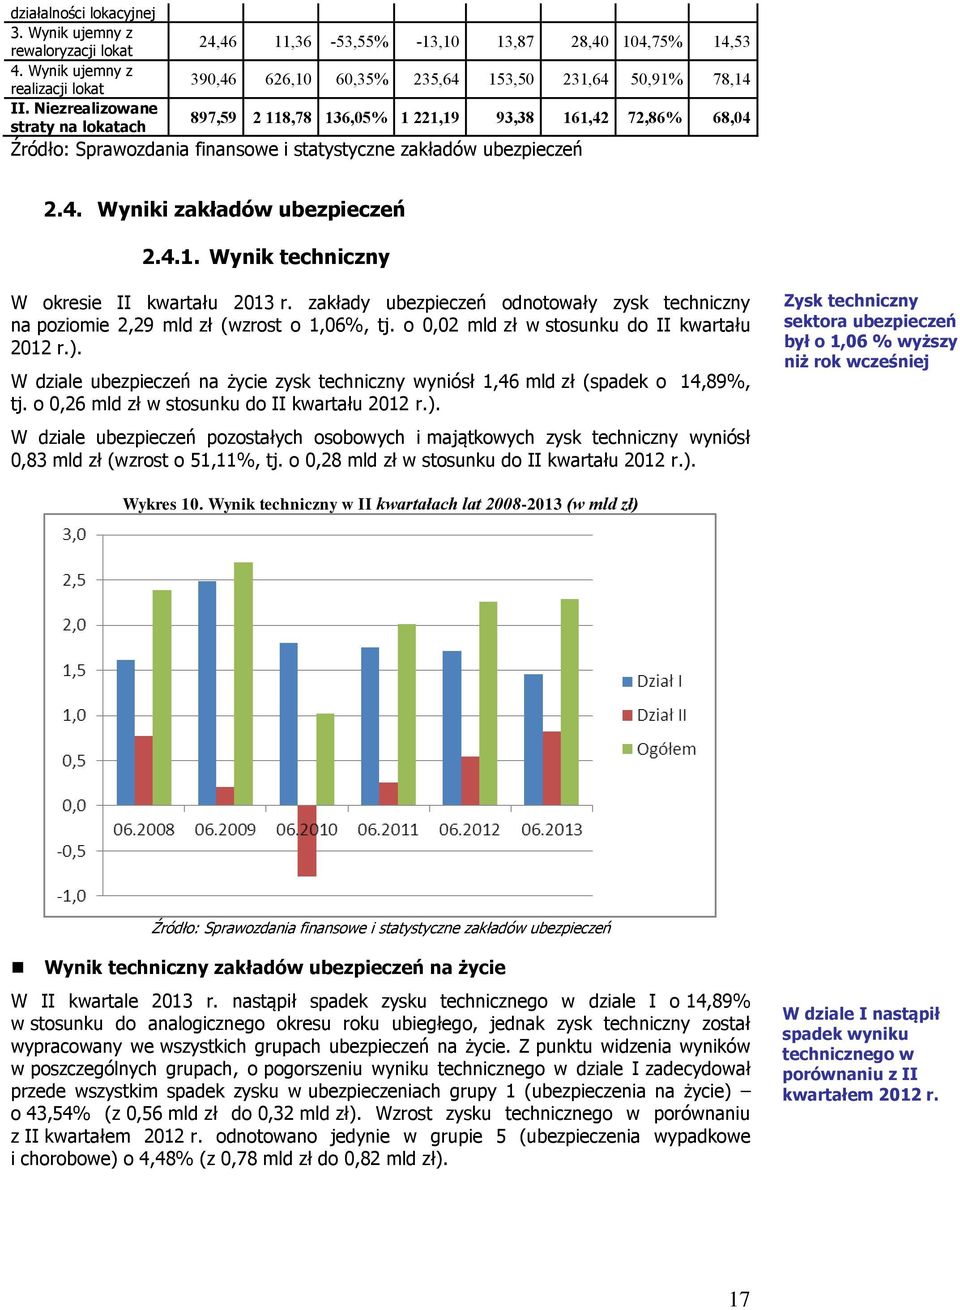 4.1. Wynik techniczny W okresie II kwartału 2013 r. zakłady ubezpieczeń odnotowały zysk techniczny na poziomie 2,29 mld zł (wzrost o 1,06%, tj. o 0,02 mld zł w stosunku do II kwartału 2012 r.).